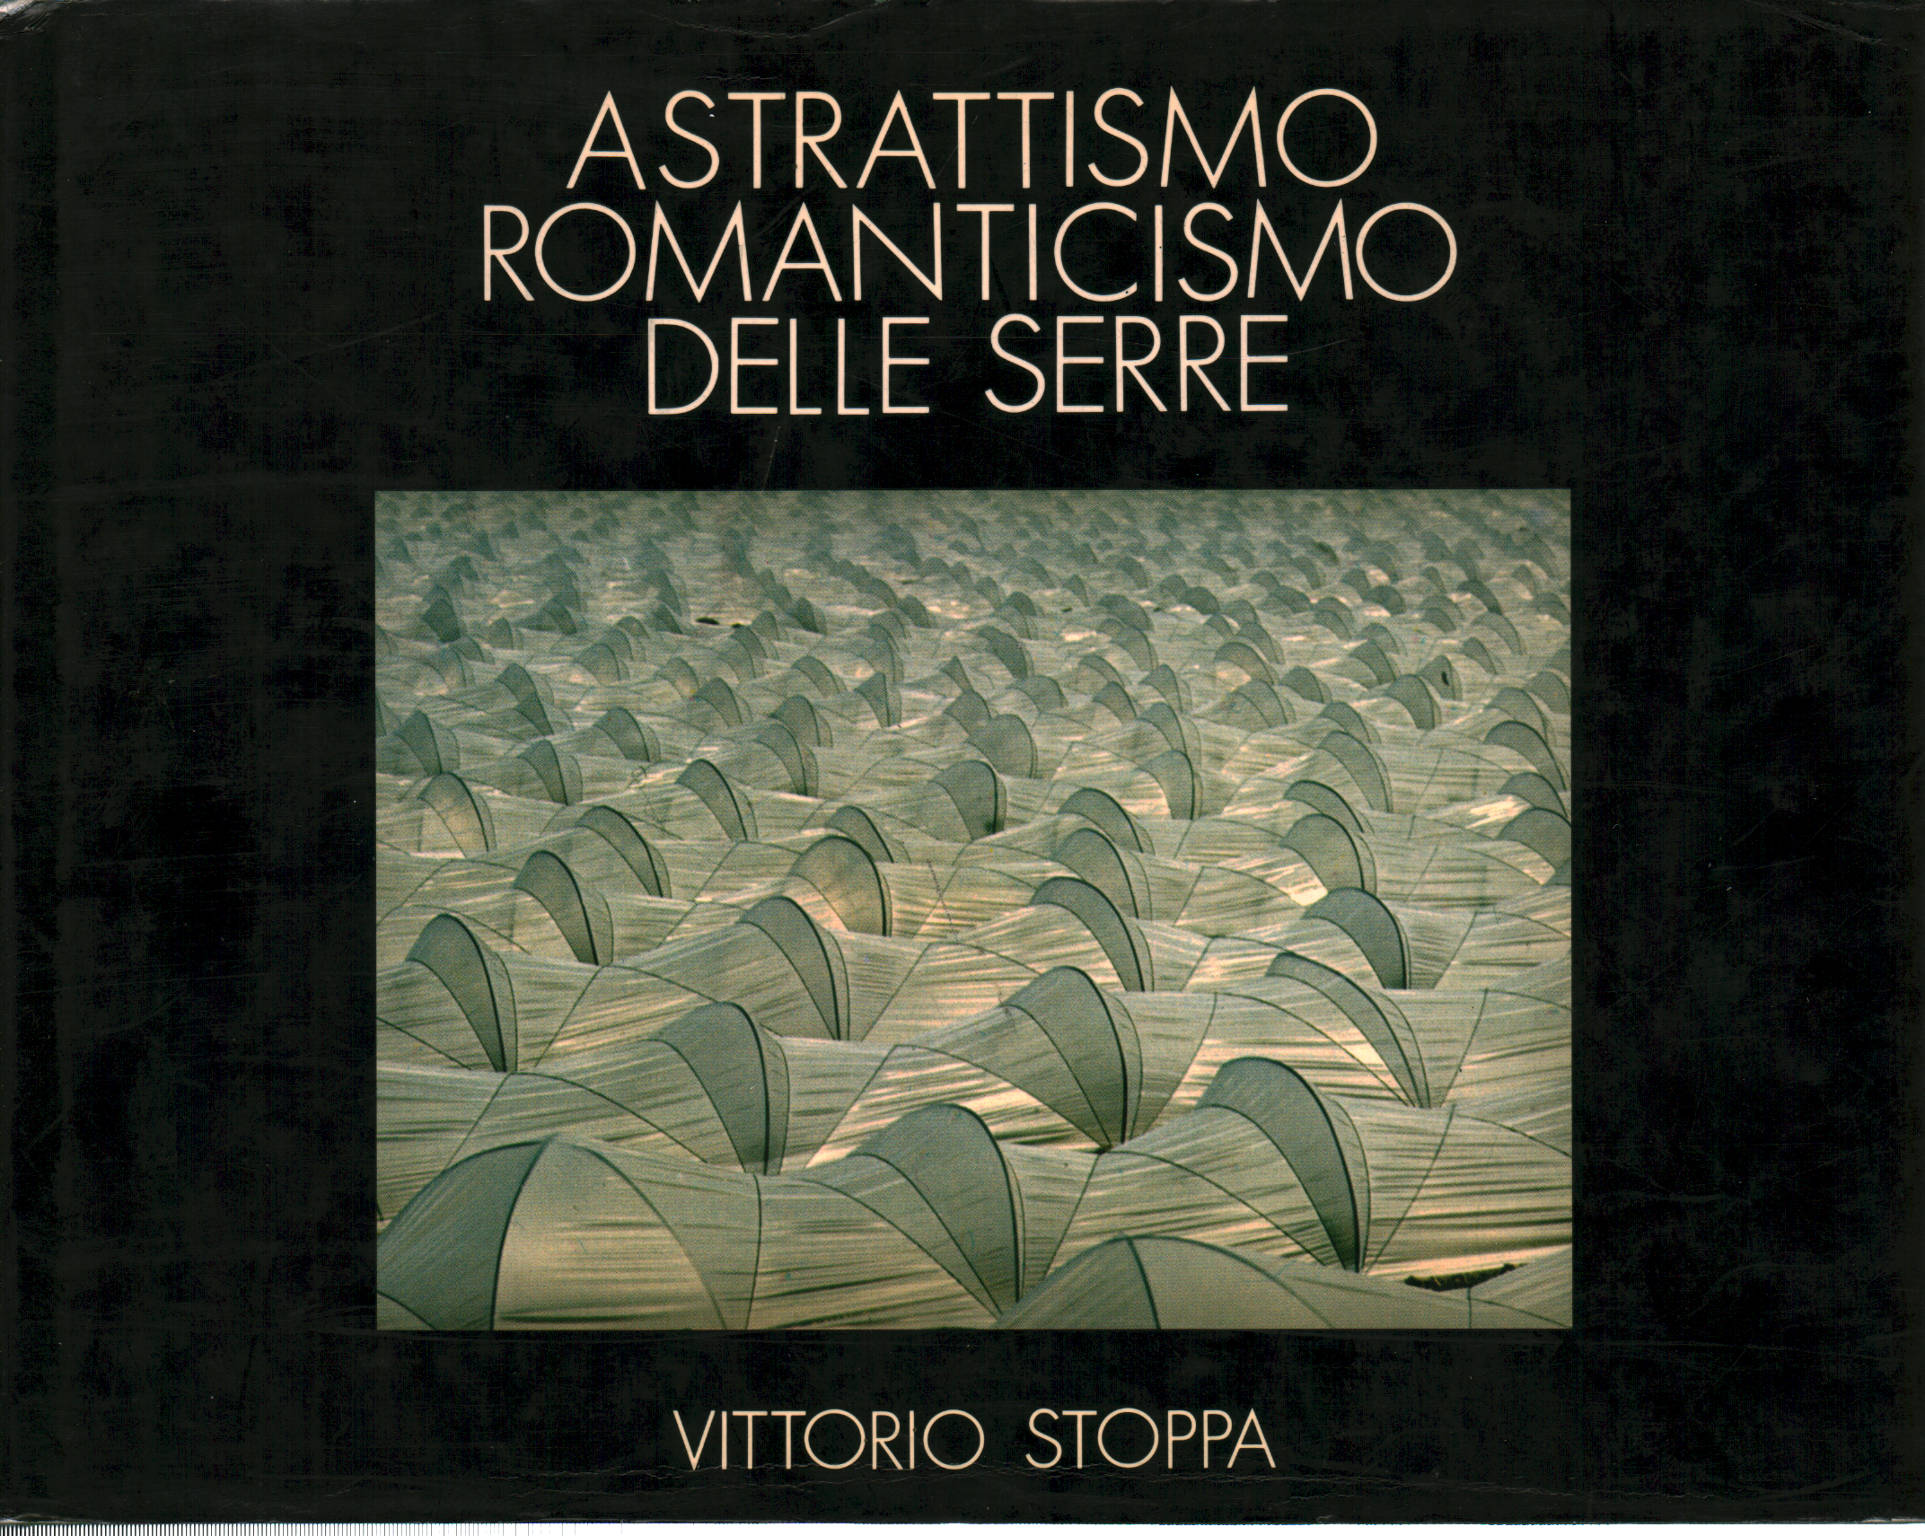 Astrattismo Romanticismo delle Serre, Vittorio Stoppa